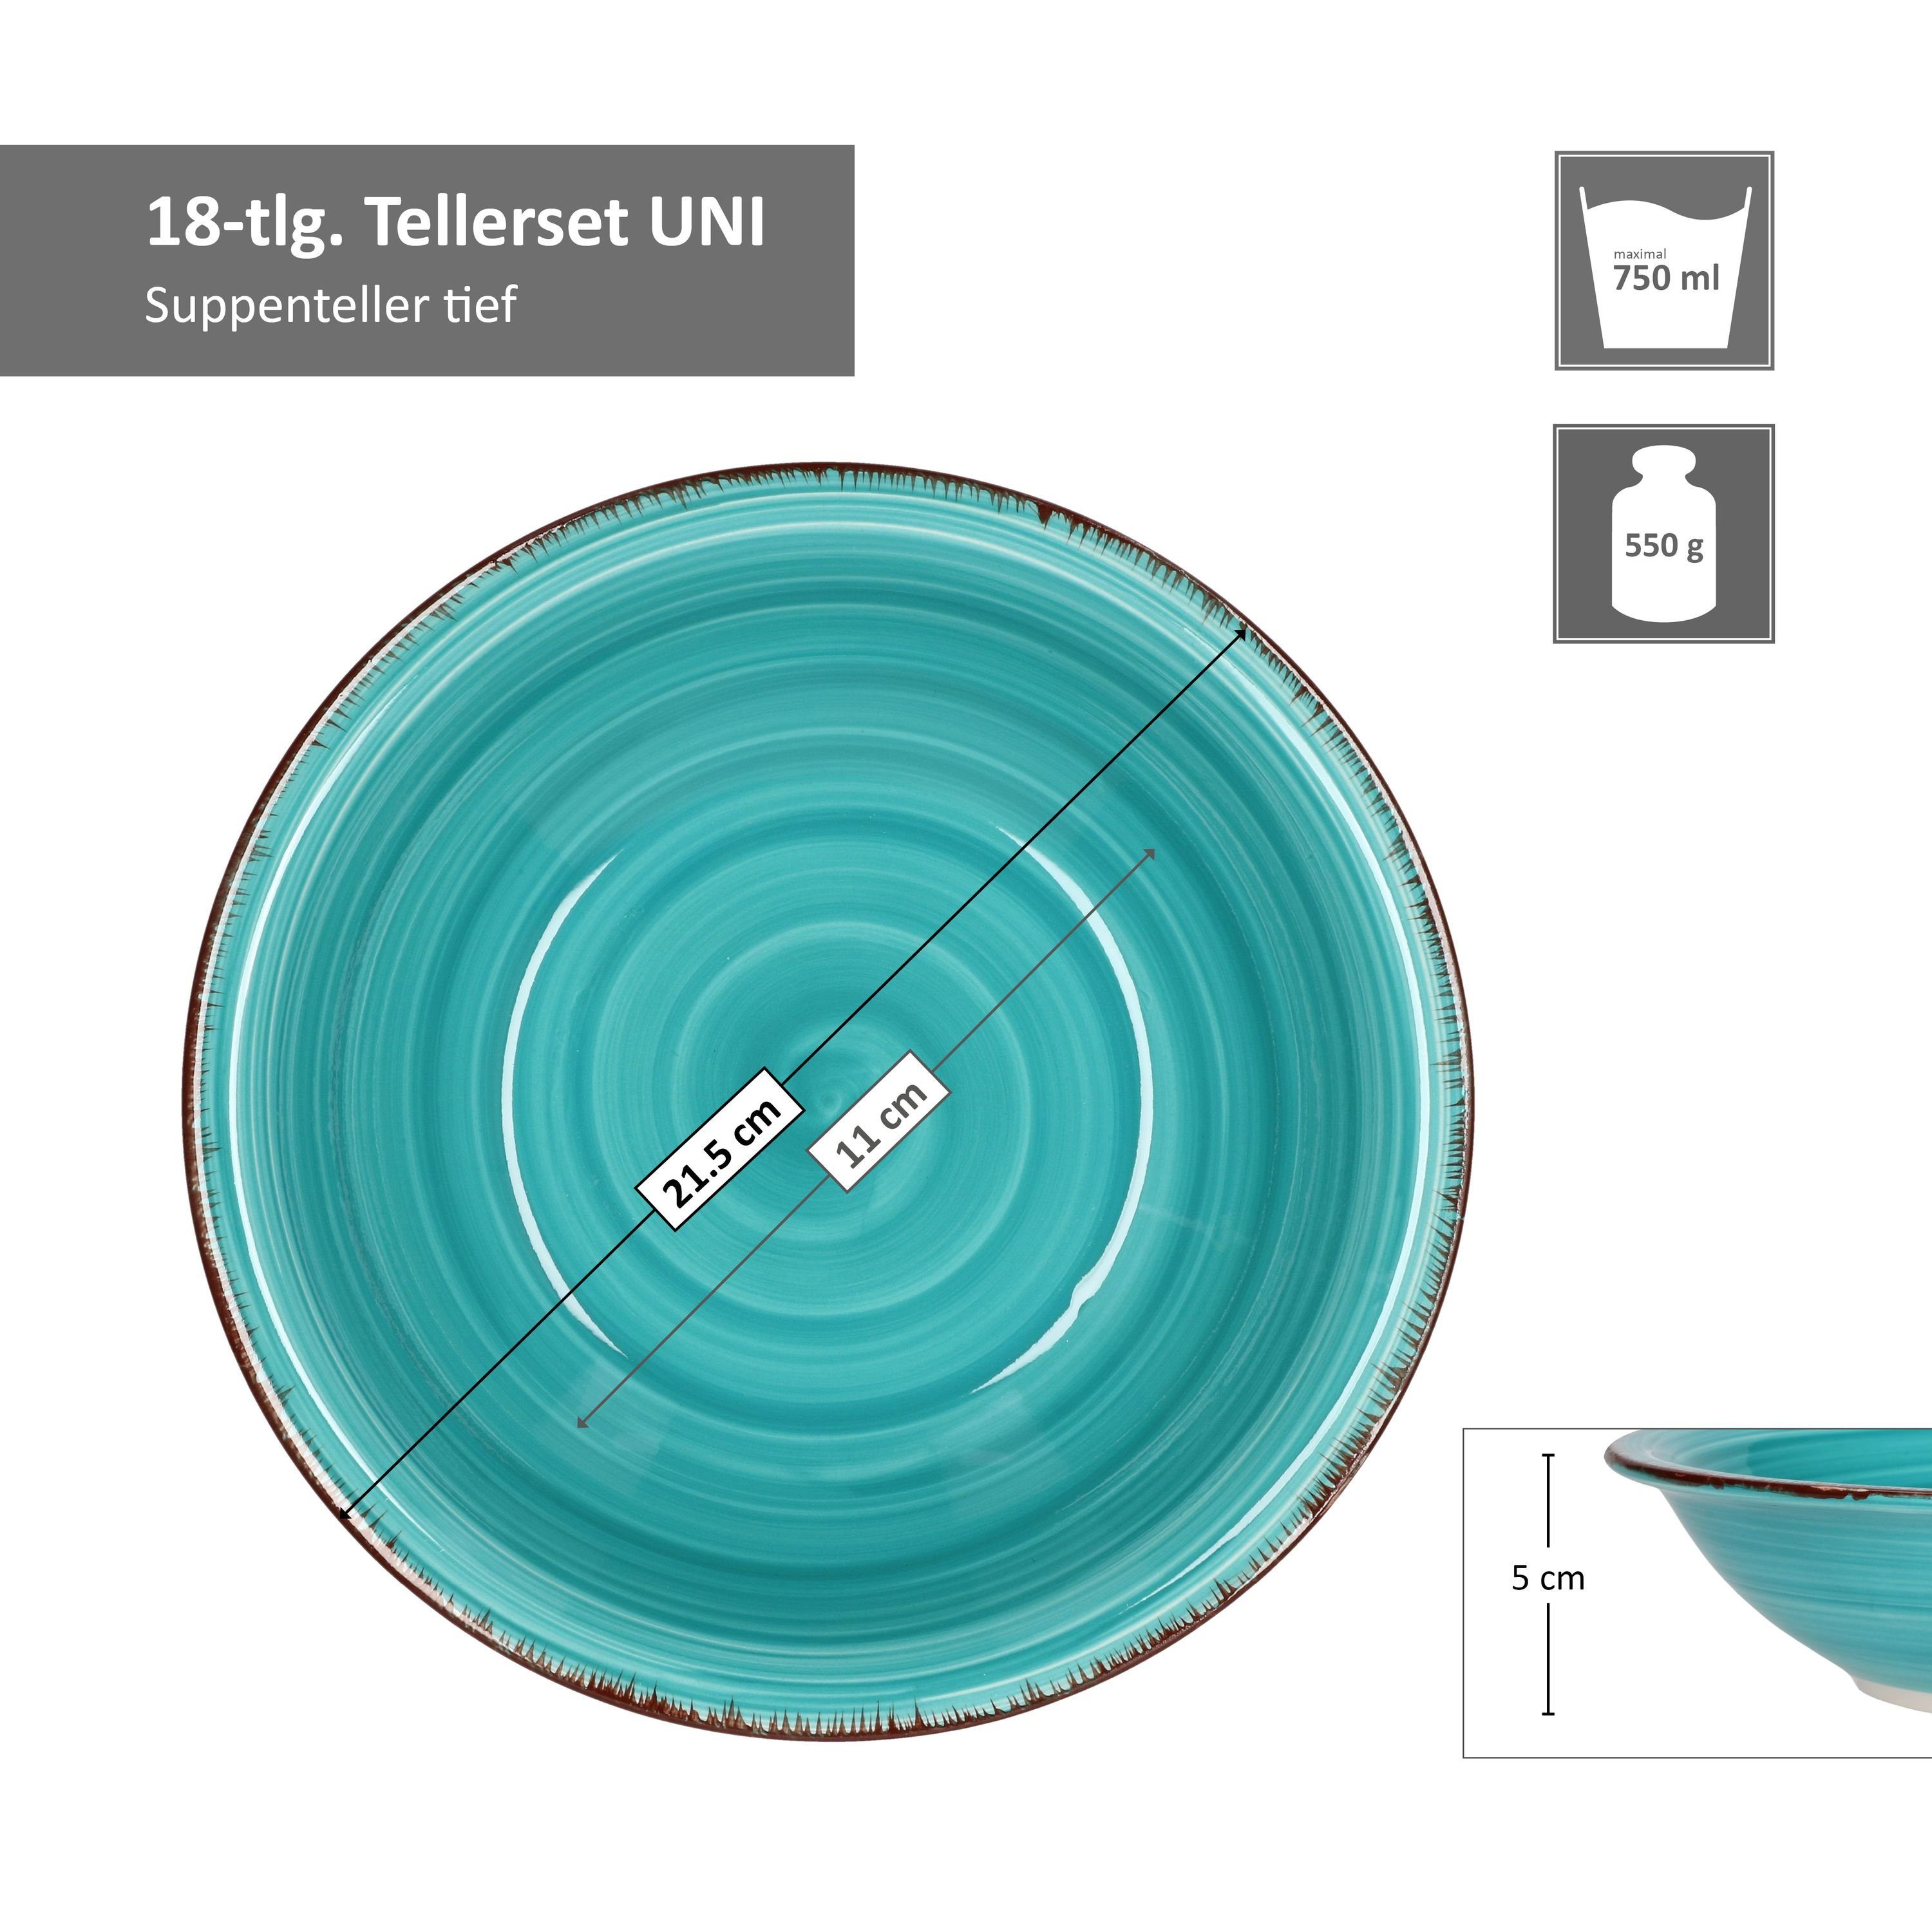 MamboCat Teller-Set 18tlg. 6 in Bunt Tellerset unterschiedlichen Personen Uni für Farben